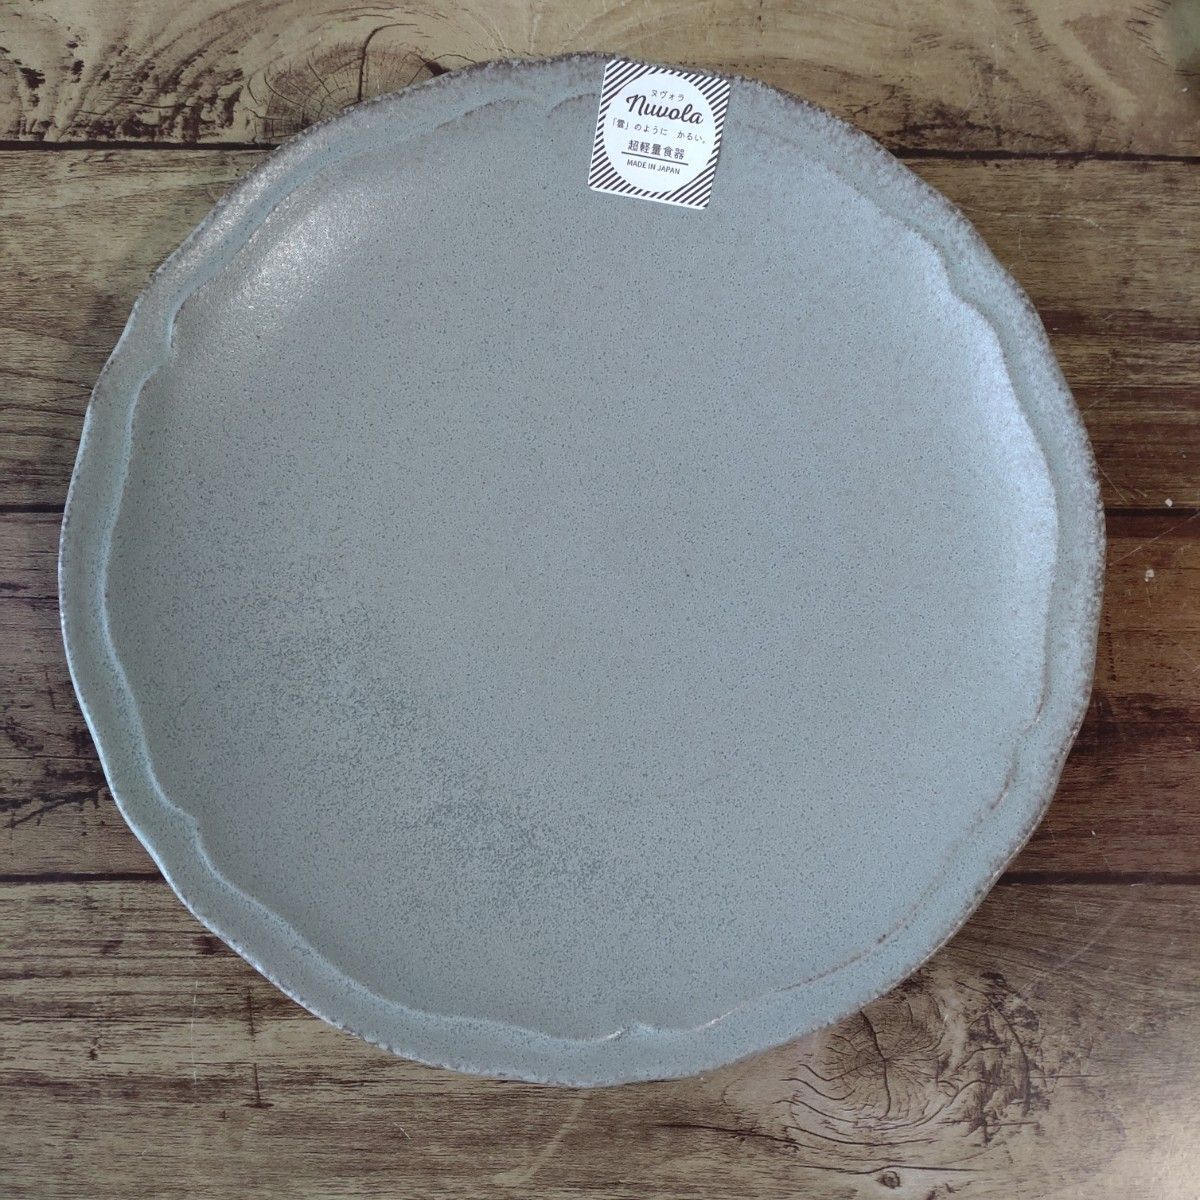 【2枚】新品 日本製 美濃焼 ヌヴォラ リンカ 大皿 プレート ディナー皿 パスタ皿 北欧 アンティーク お好きな方に